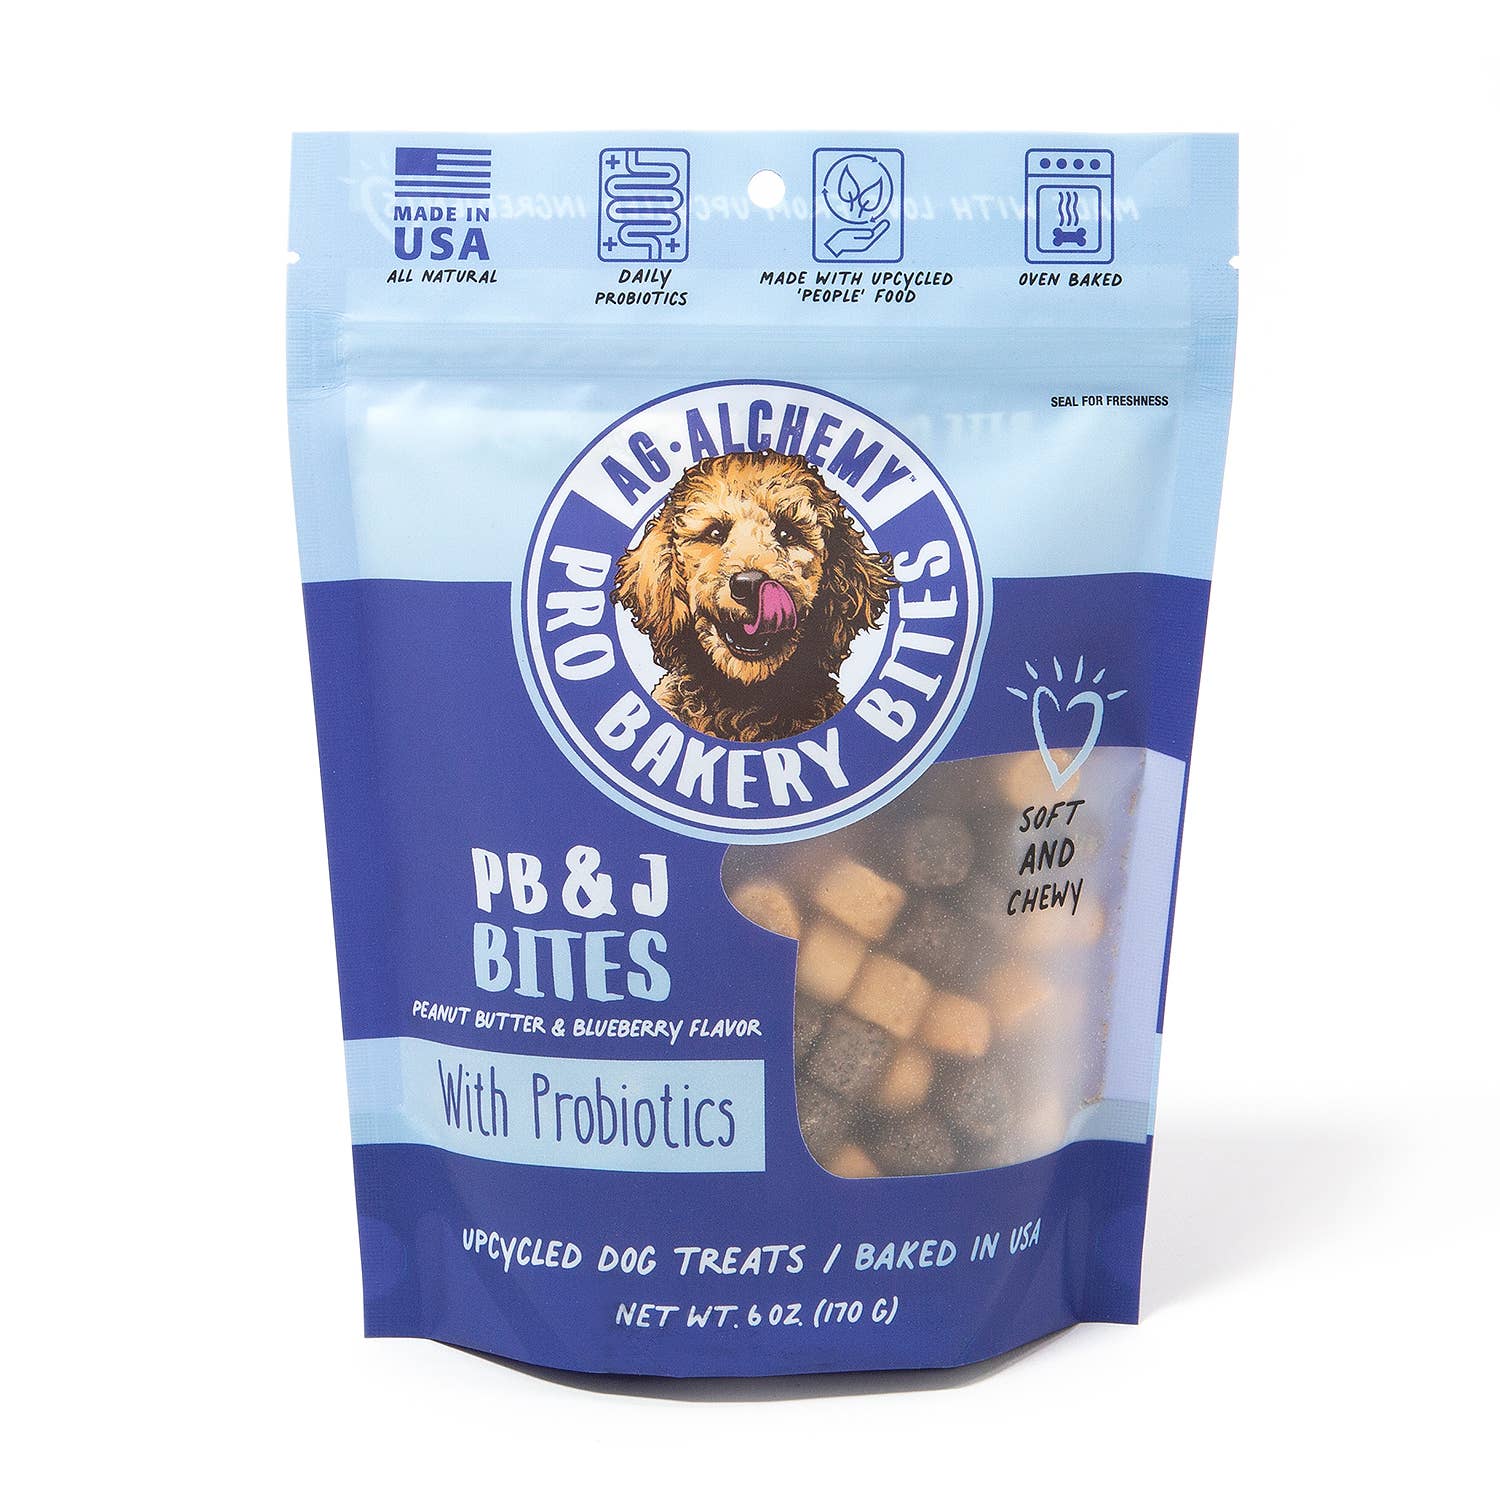 AgAlchemy Animal Nutrition Pro Bakery Bites Soft & Chewy PB&J Bites Dog Treat